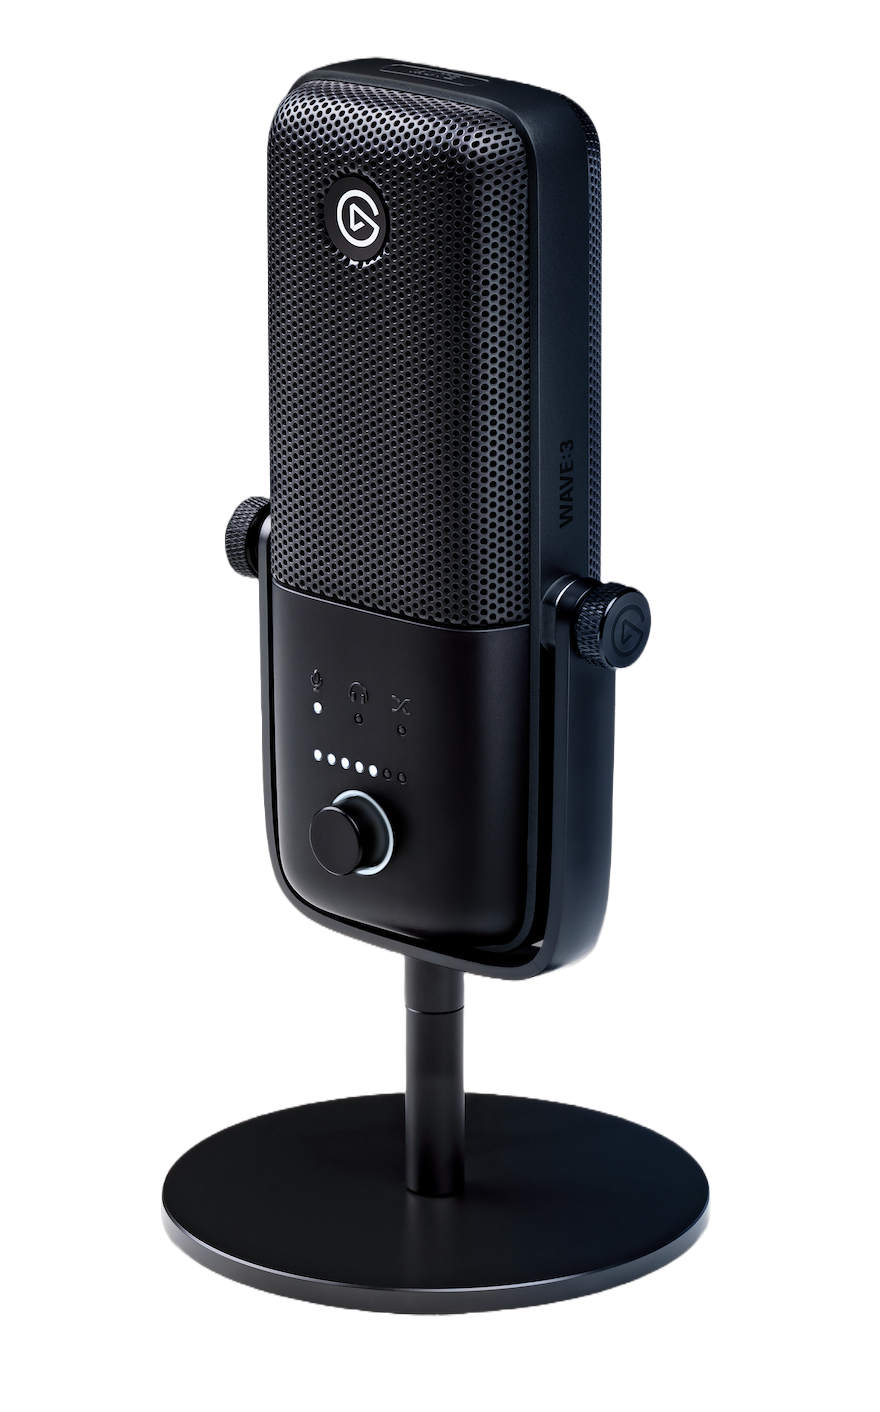 Elgato Wave 3 Condenser Microphone - Simpson Advanced